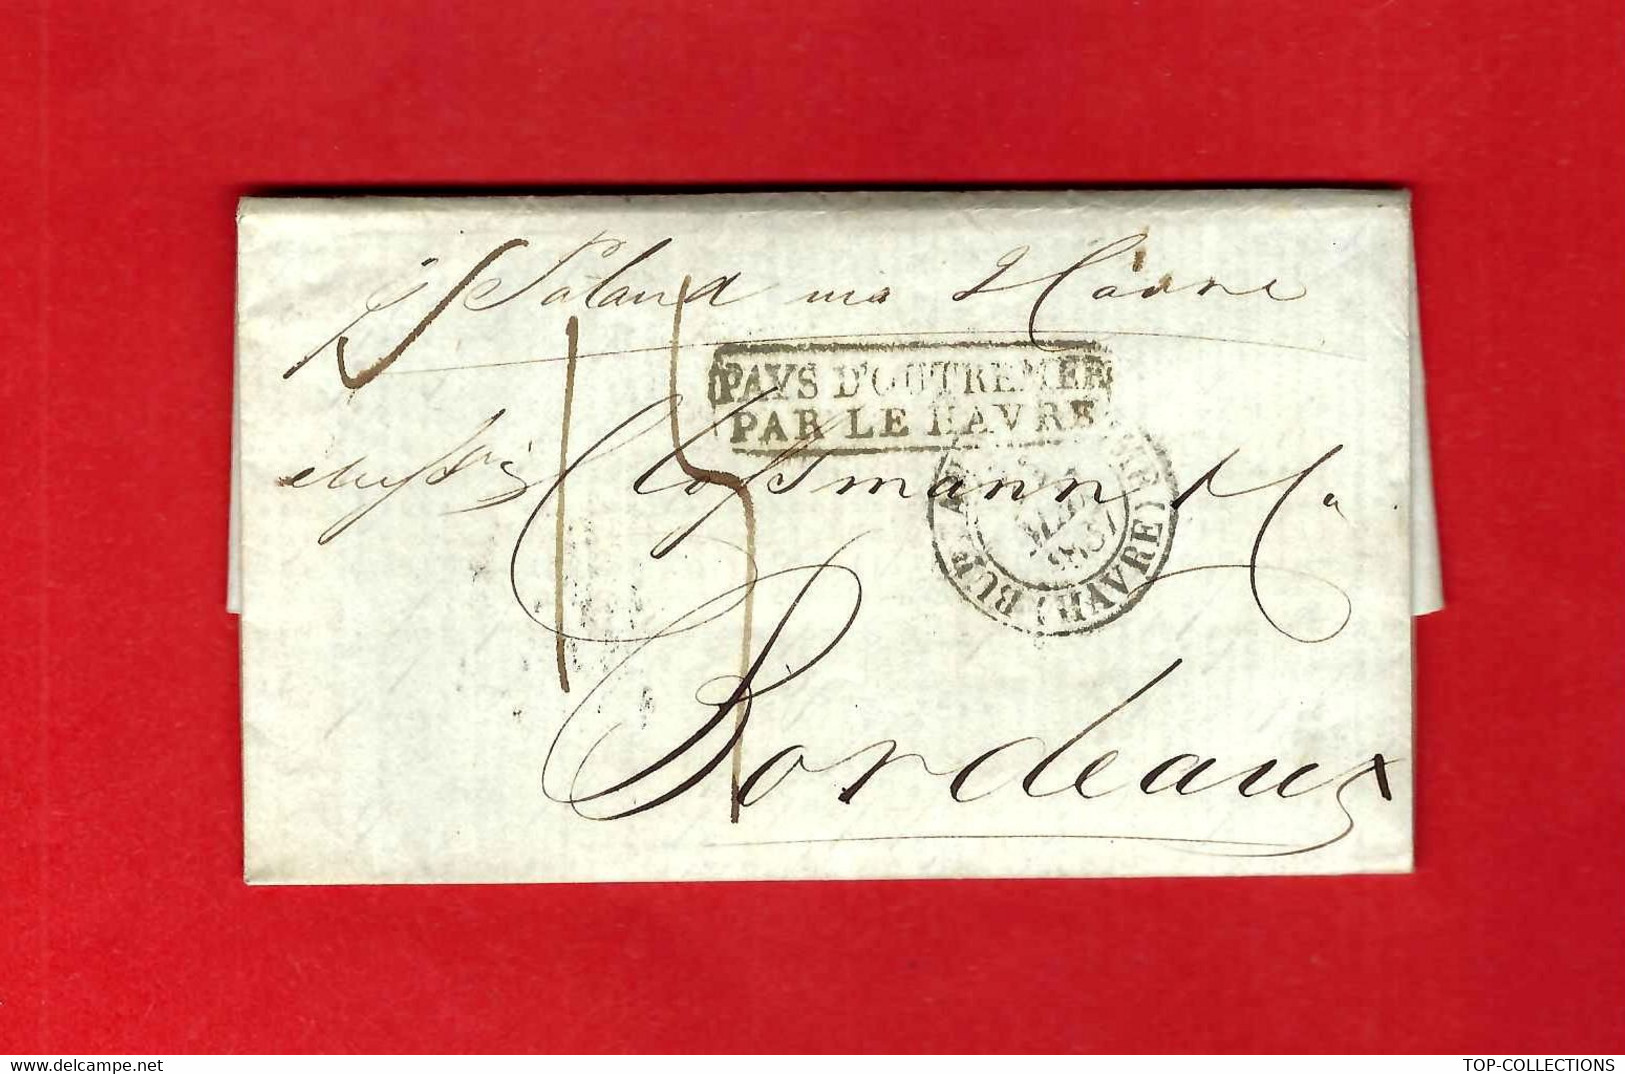 1837  New York lettre imprimé de cotation NEGOCE COMMERCE INTERNATIONAL France ETATS UNIS  => Clossman  vins à Bordeaux